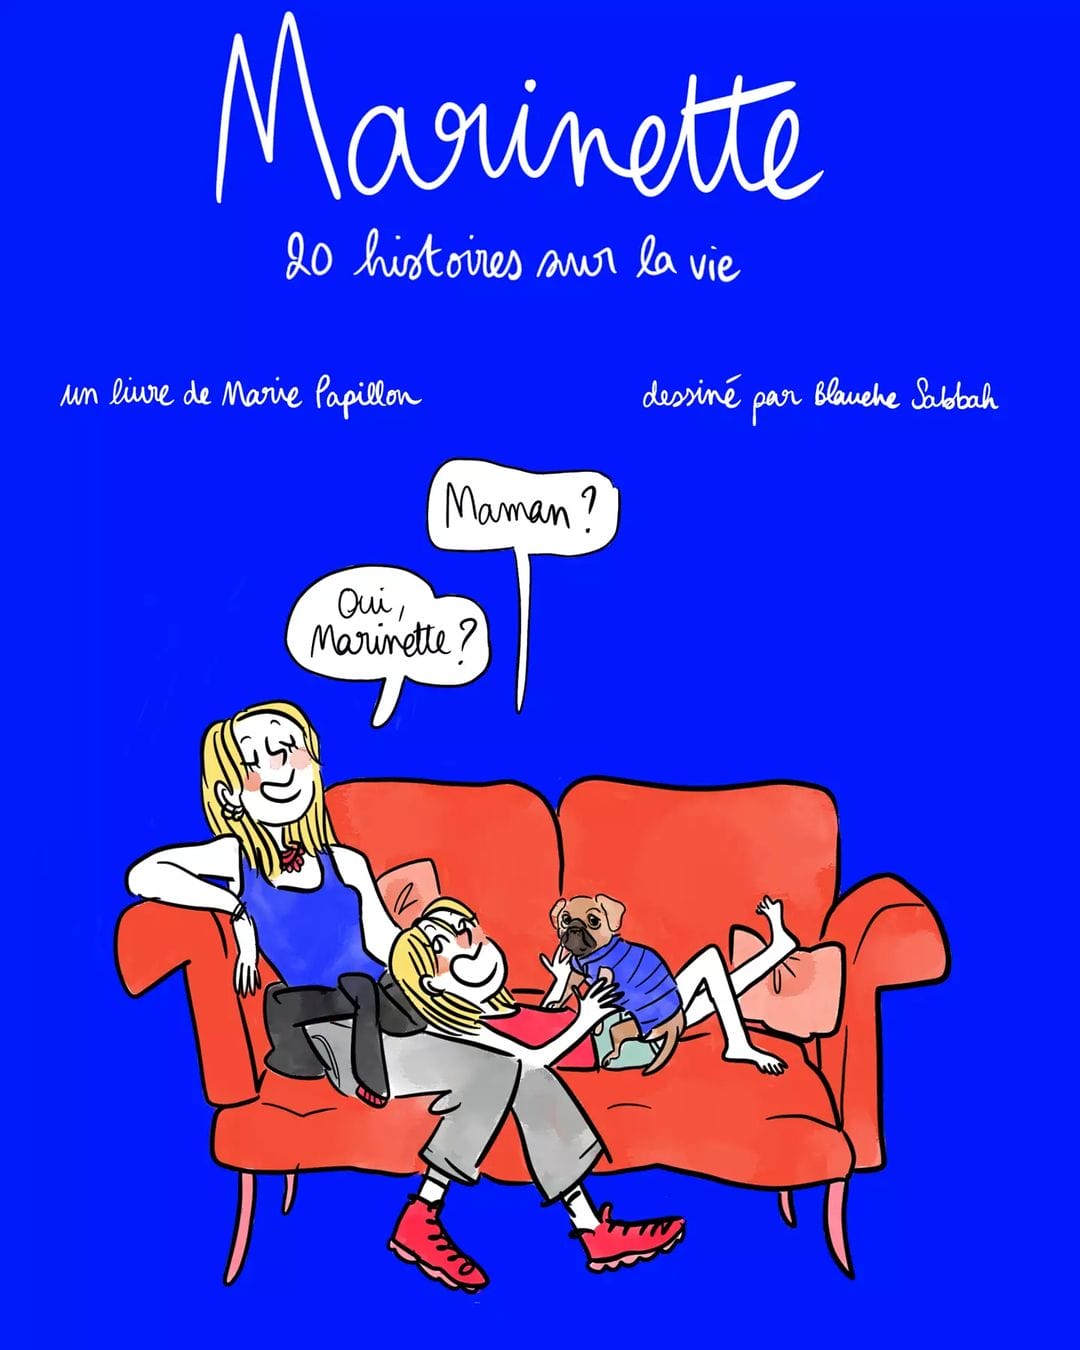 Couverture de "Marinette". Sur un fond bleu Klein, dessin d'une mère et sa fille discutent assises sur un canapé rouge.